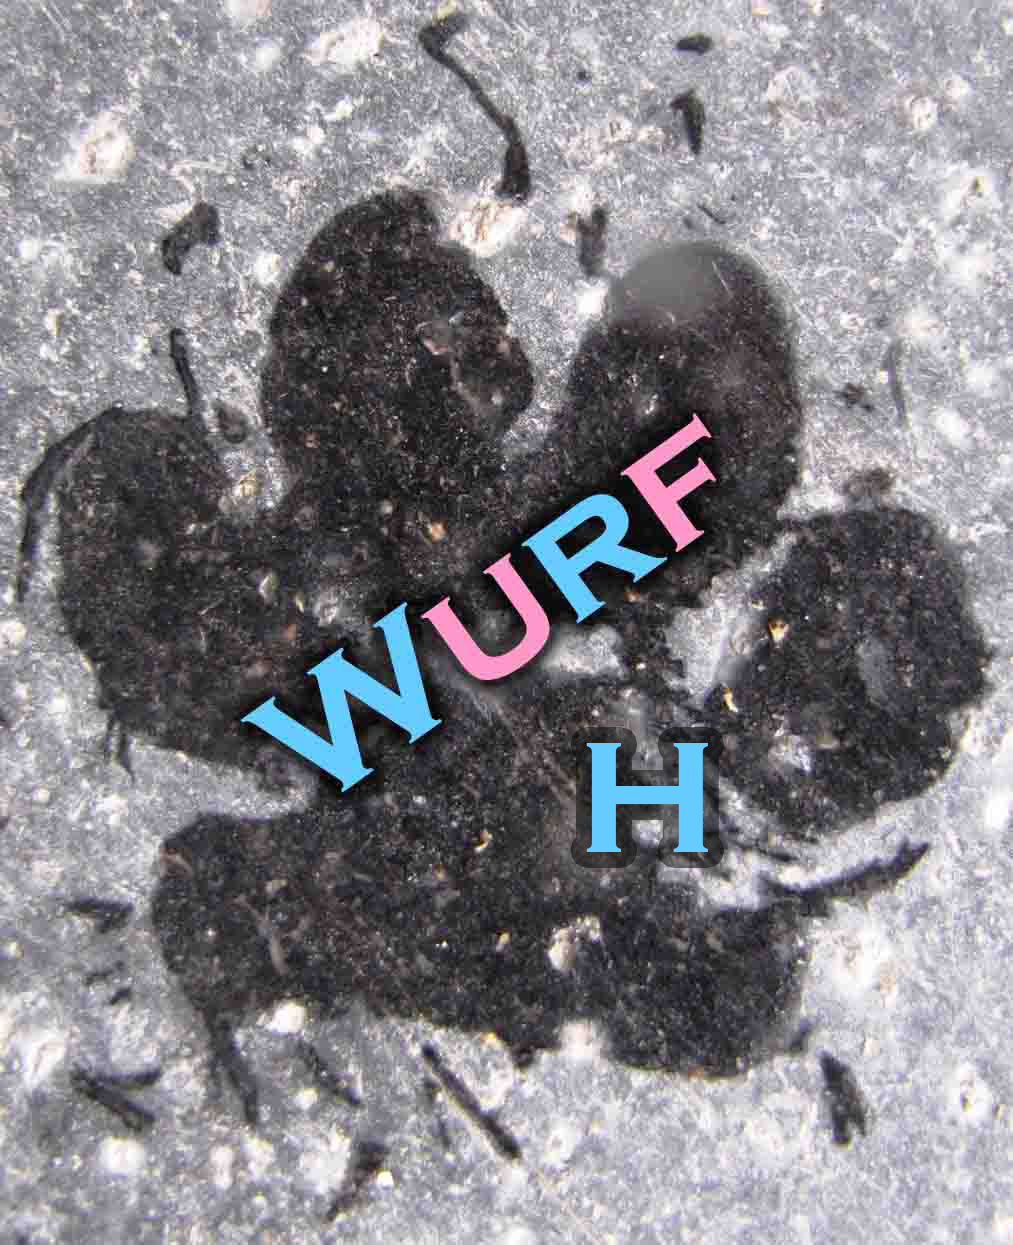 Wurf H